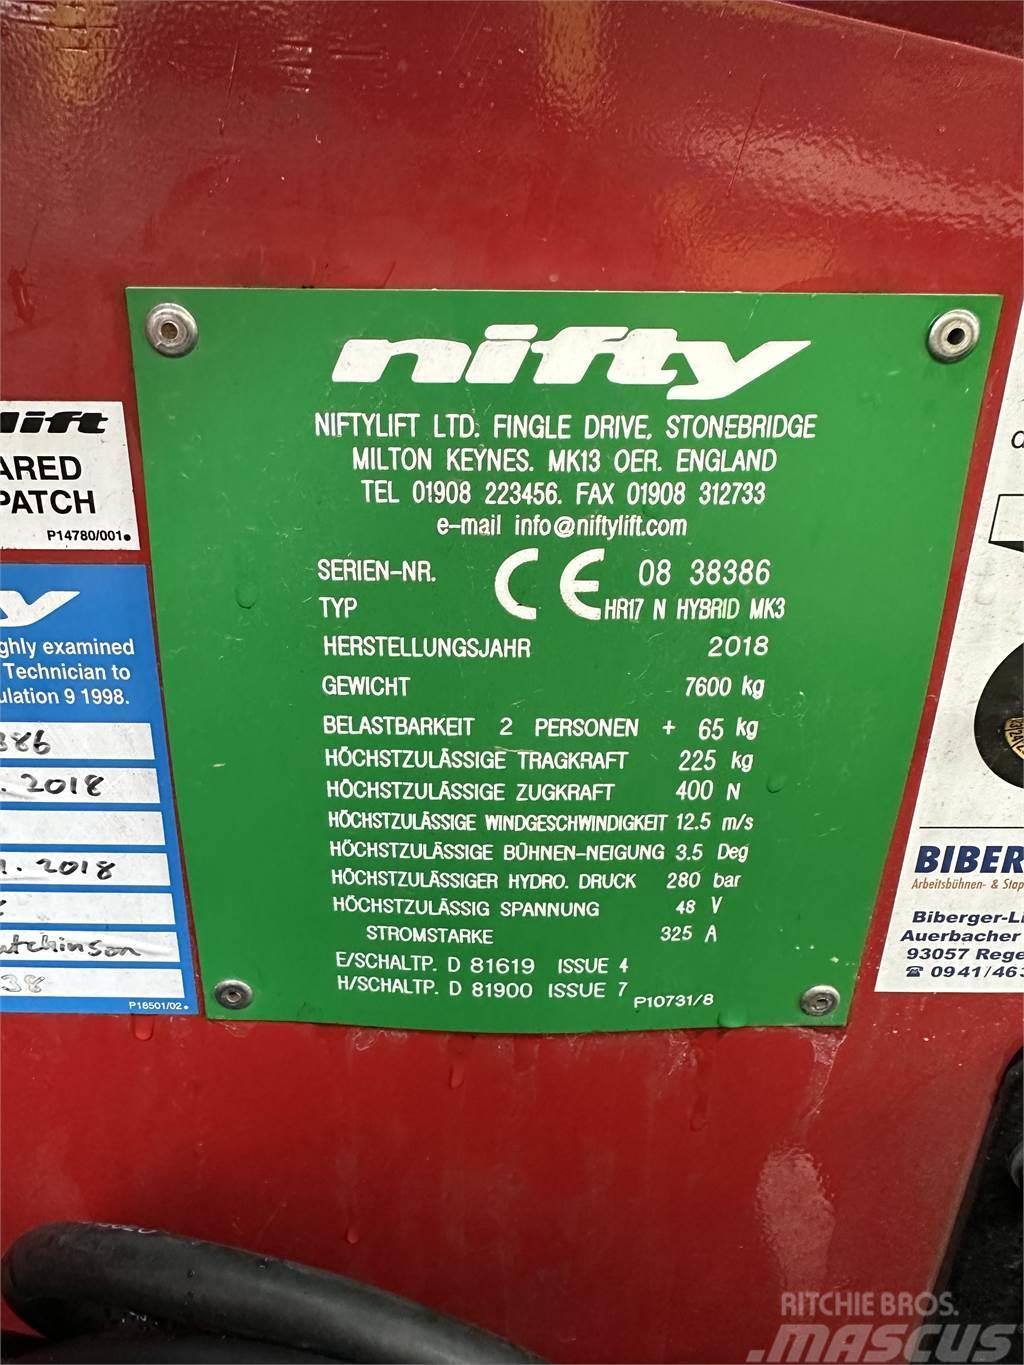 Niftylift HR 17 N HYBRID MK3 Körüklü personel platformları